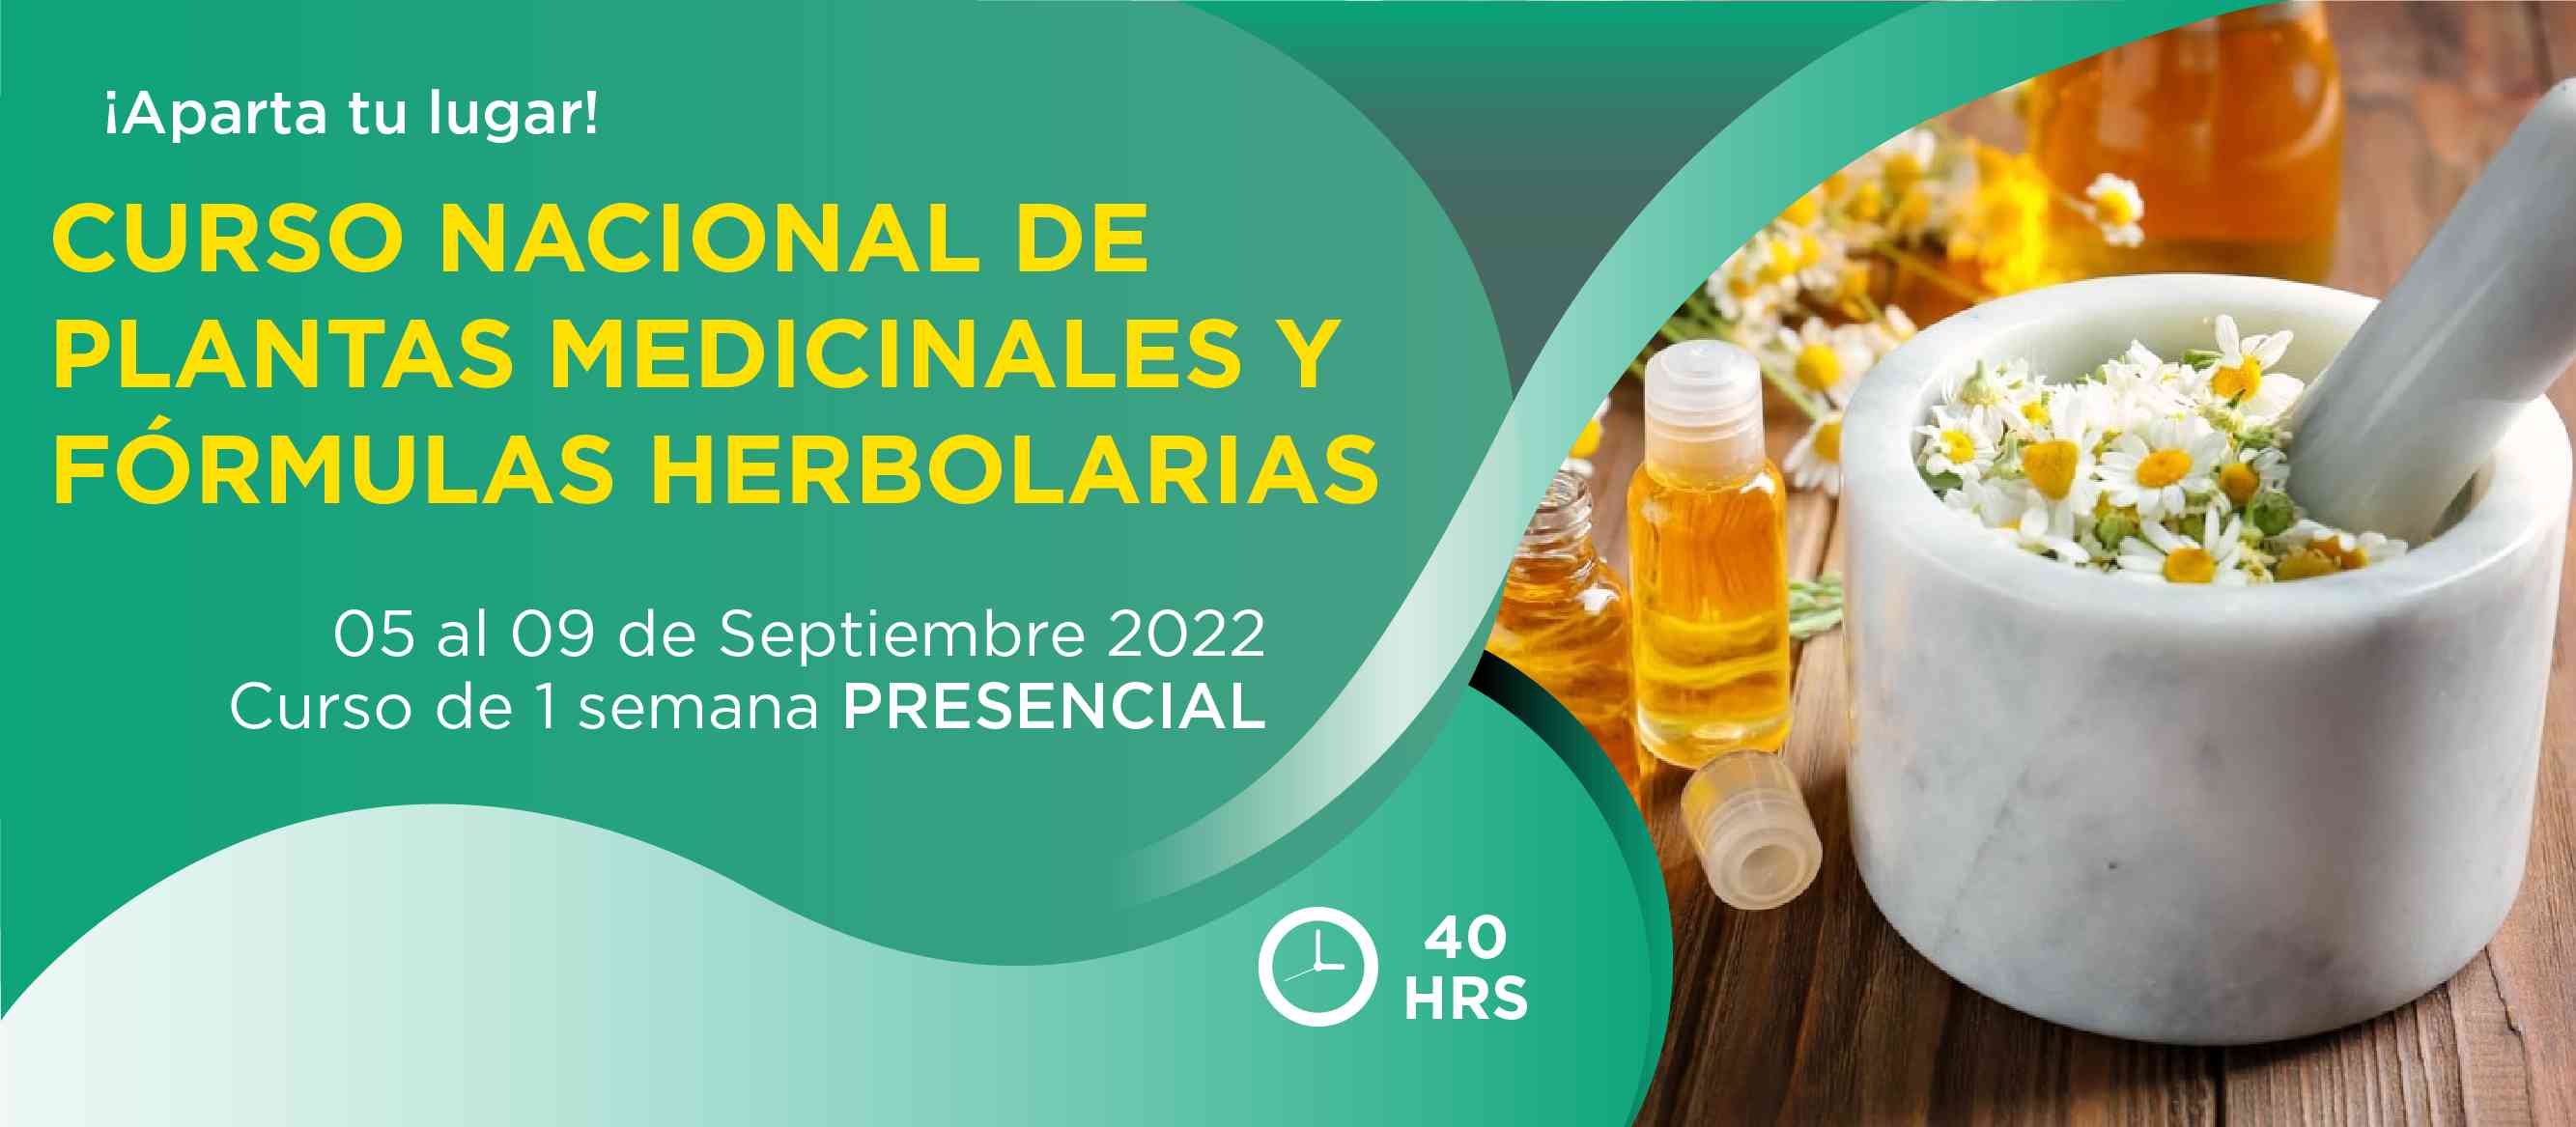 Banner para el curso de CURSO NACIONAL DE PLANTAS MEDICINALES Y FÓRMULAS HERBOLARIAS >